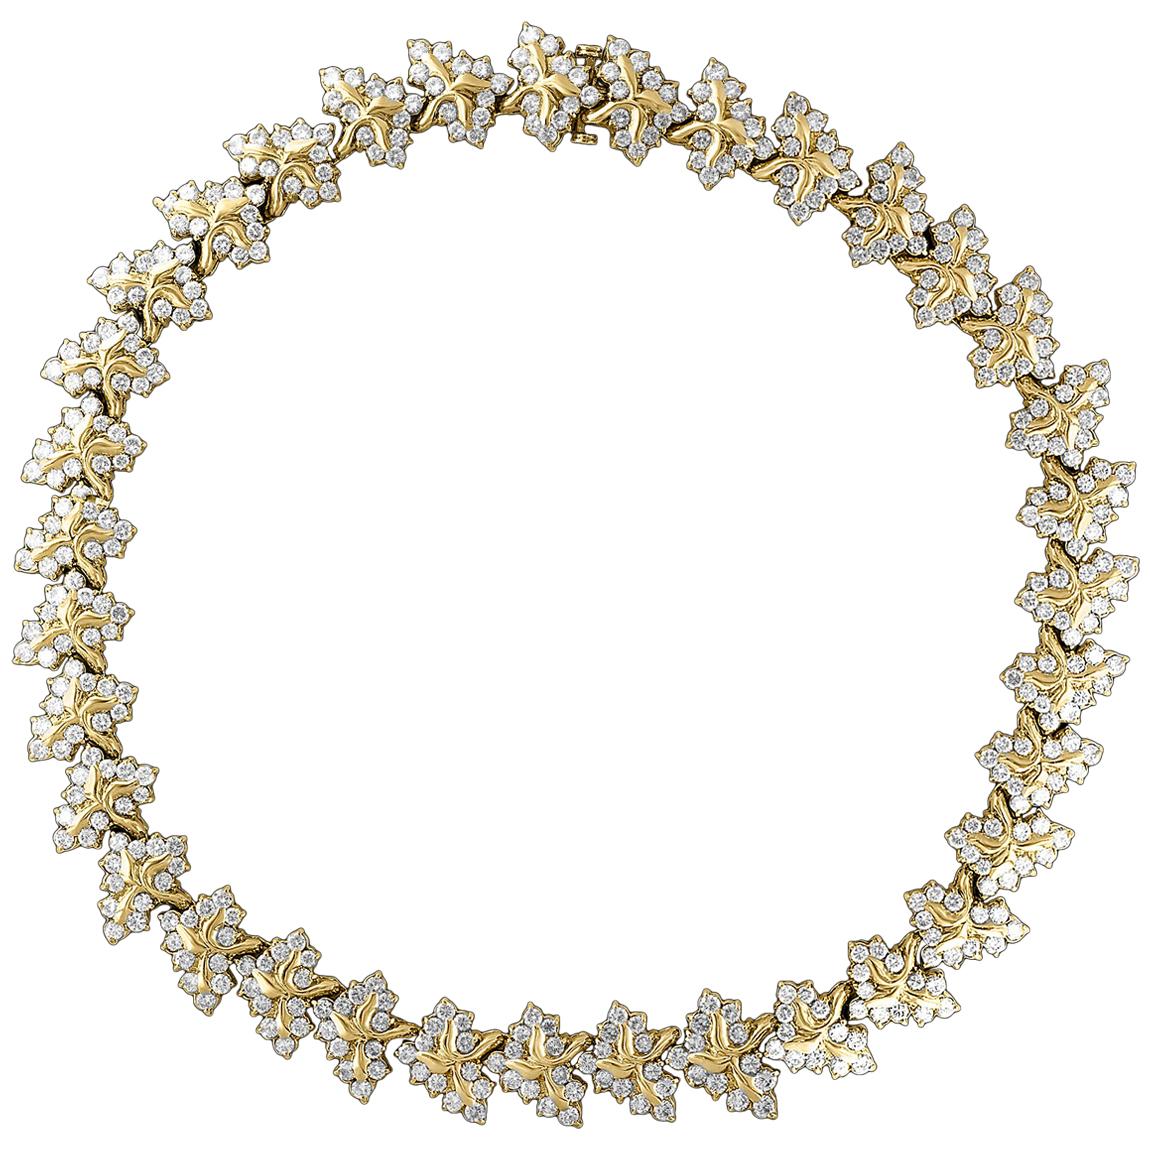 38 Carat Diamond Necklace and Bracelet 180 Grams 14 Karat Gold Bridal Suite For Sale